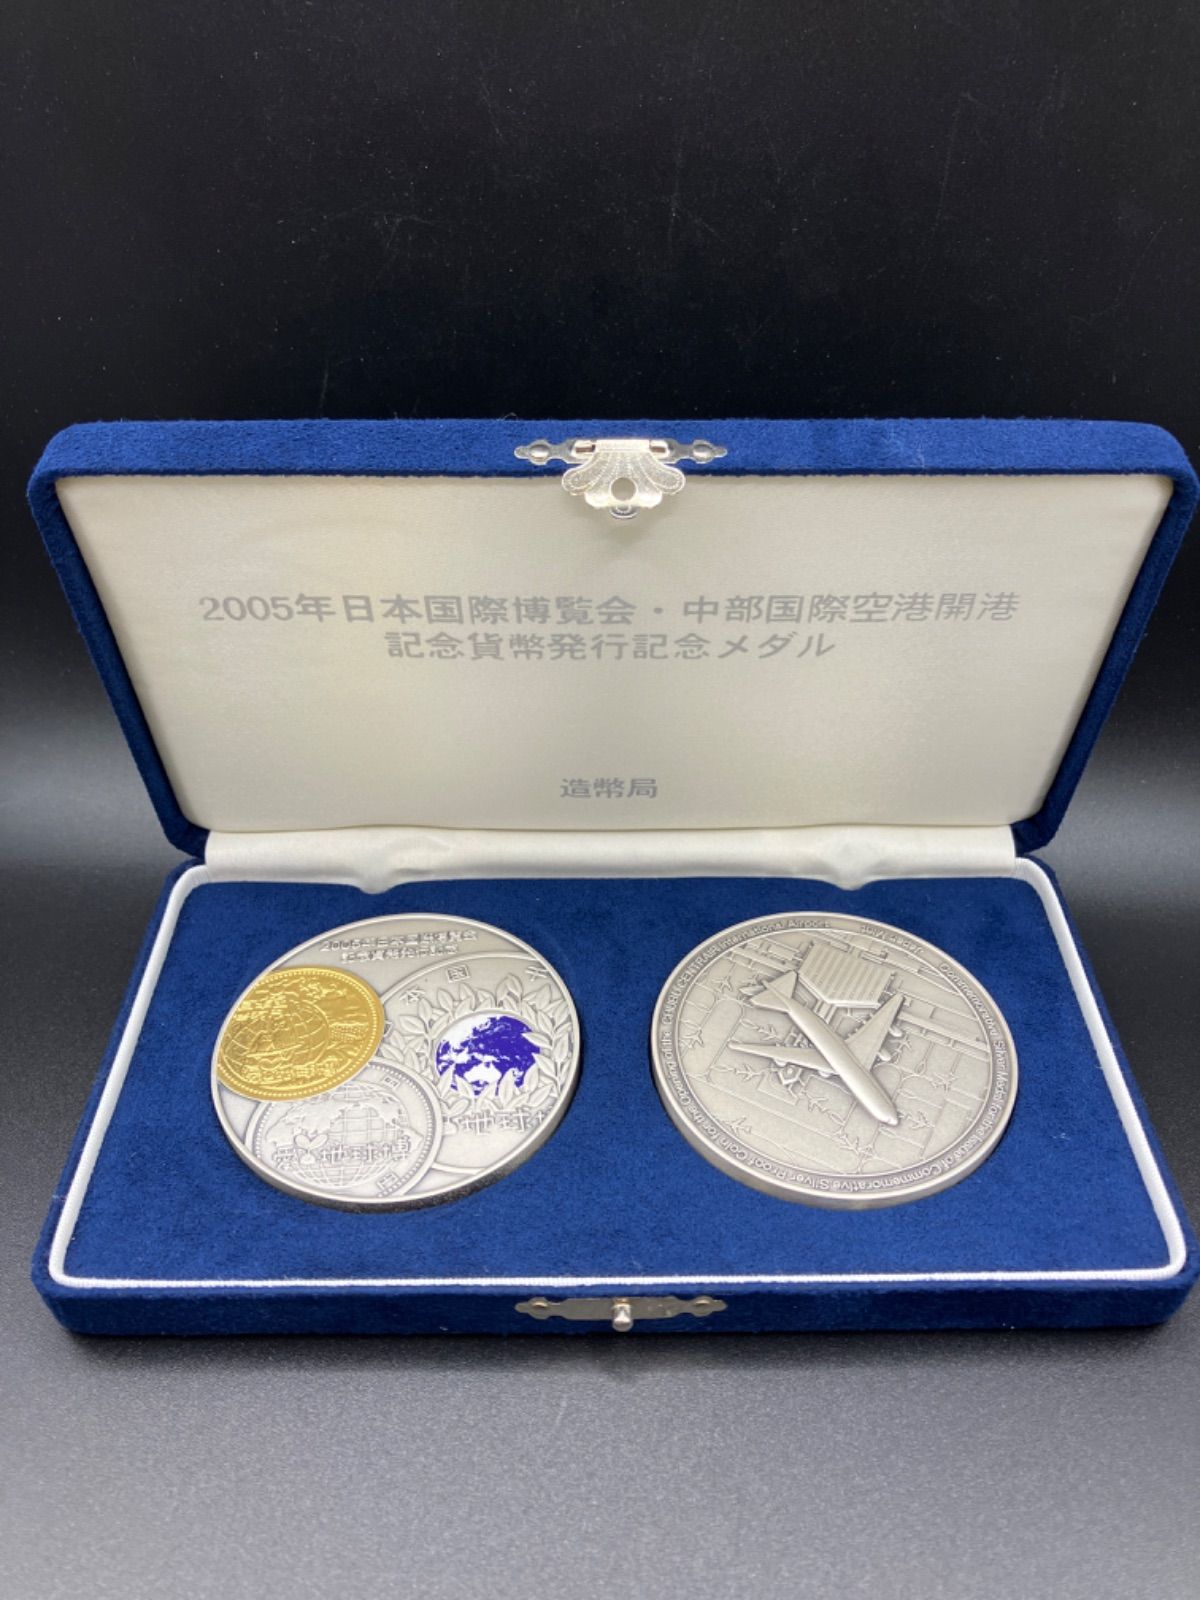 【日本買付】関西国際空港開港記念発行メダルセット 純銀 コレクション